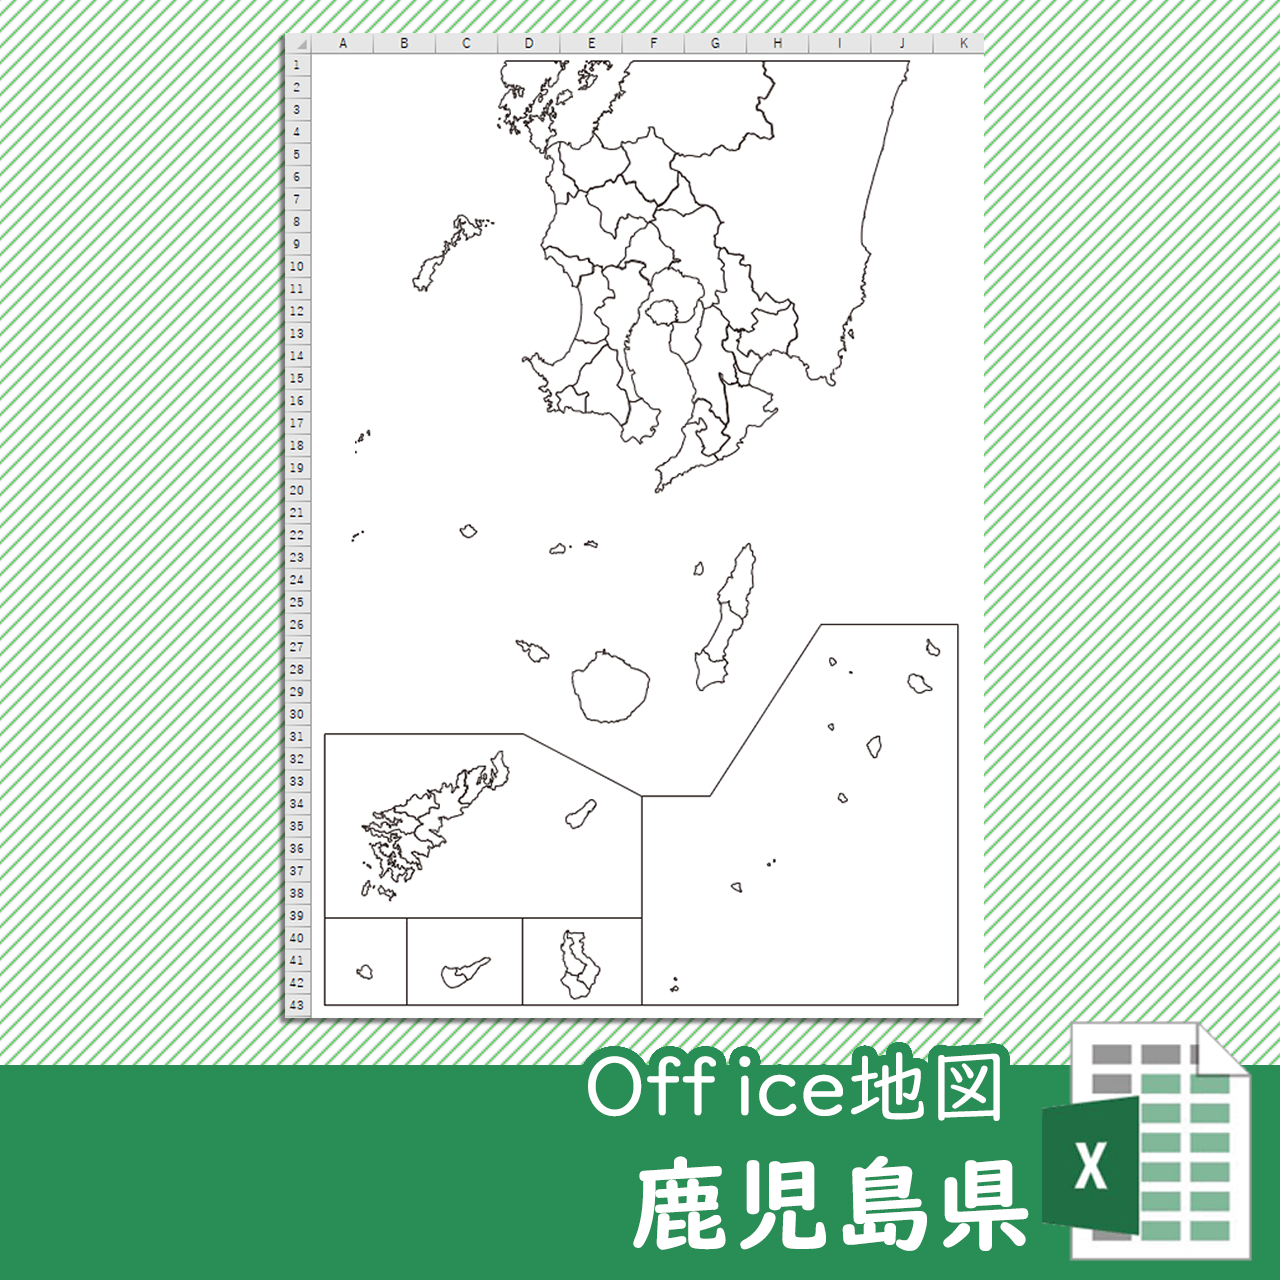 鹿児島県のOffice地図のサムネイル